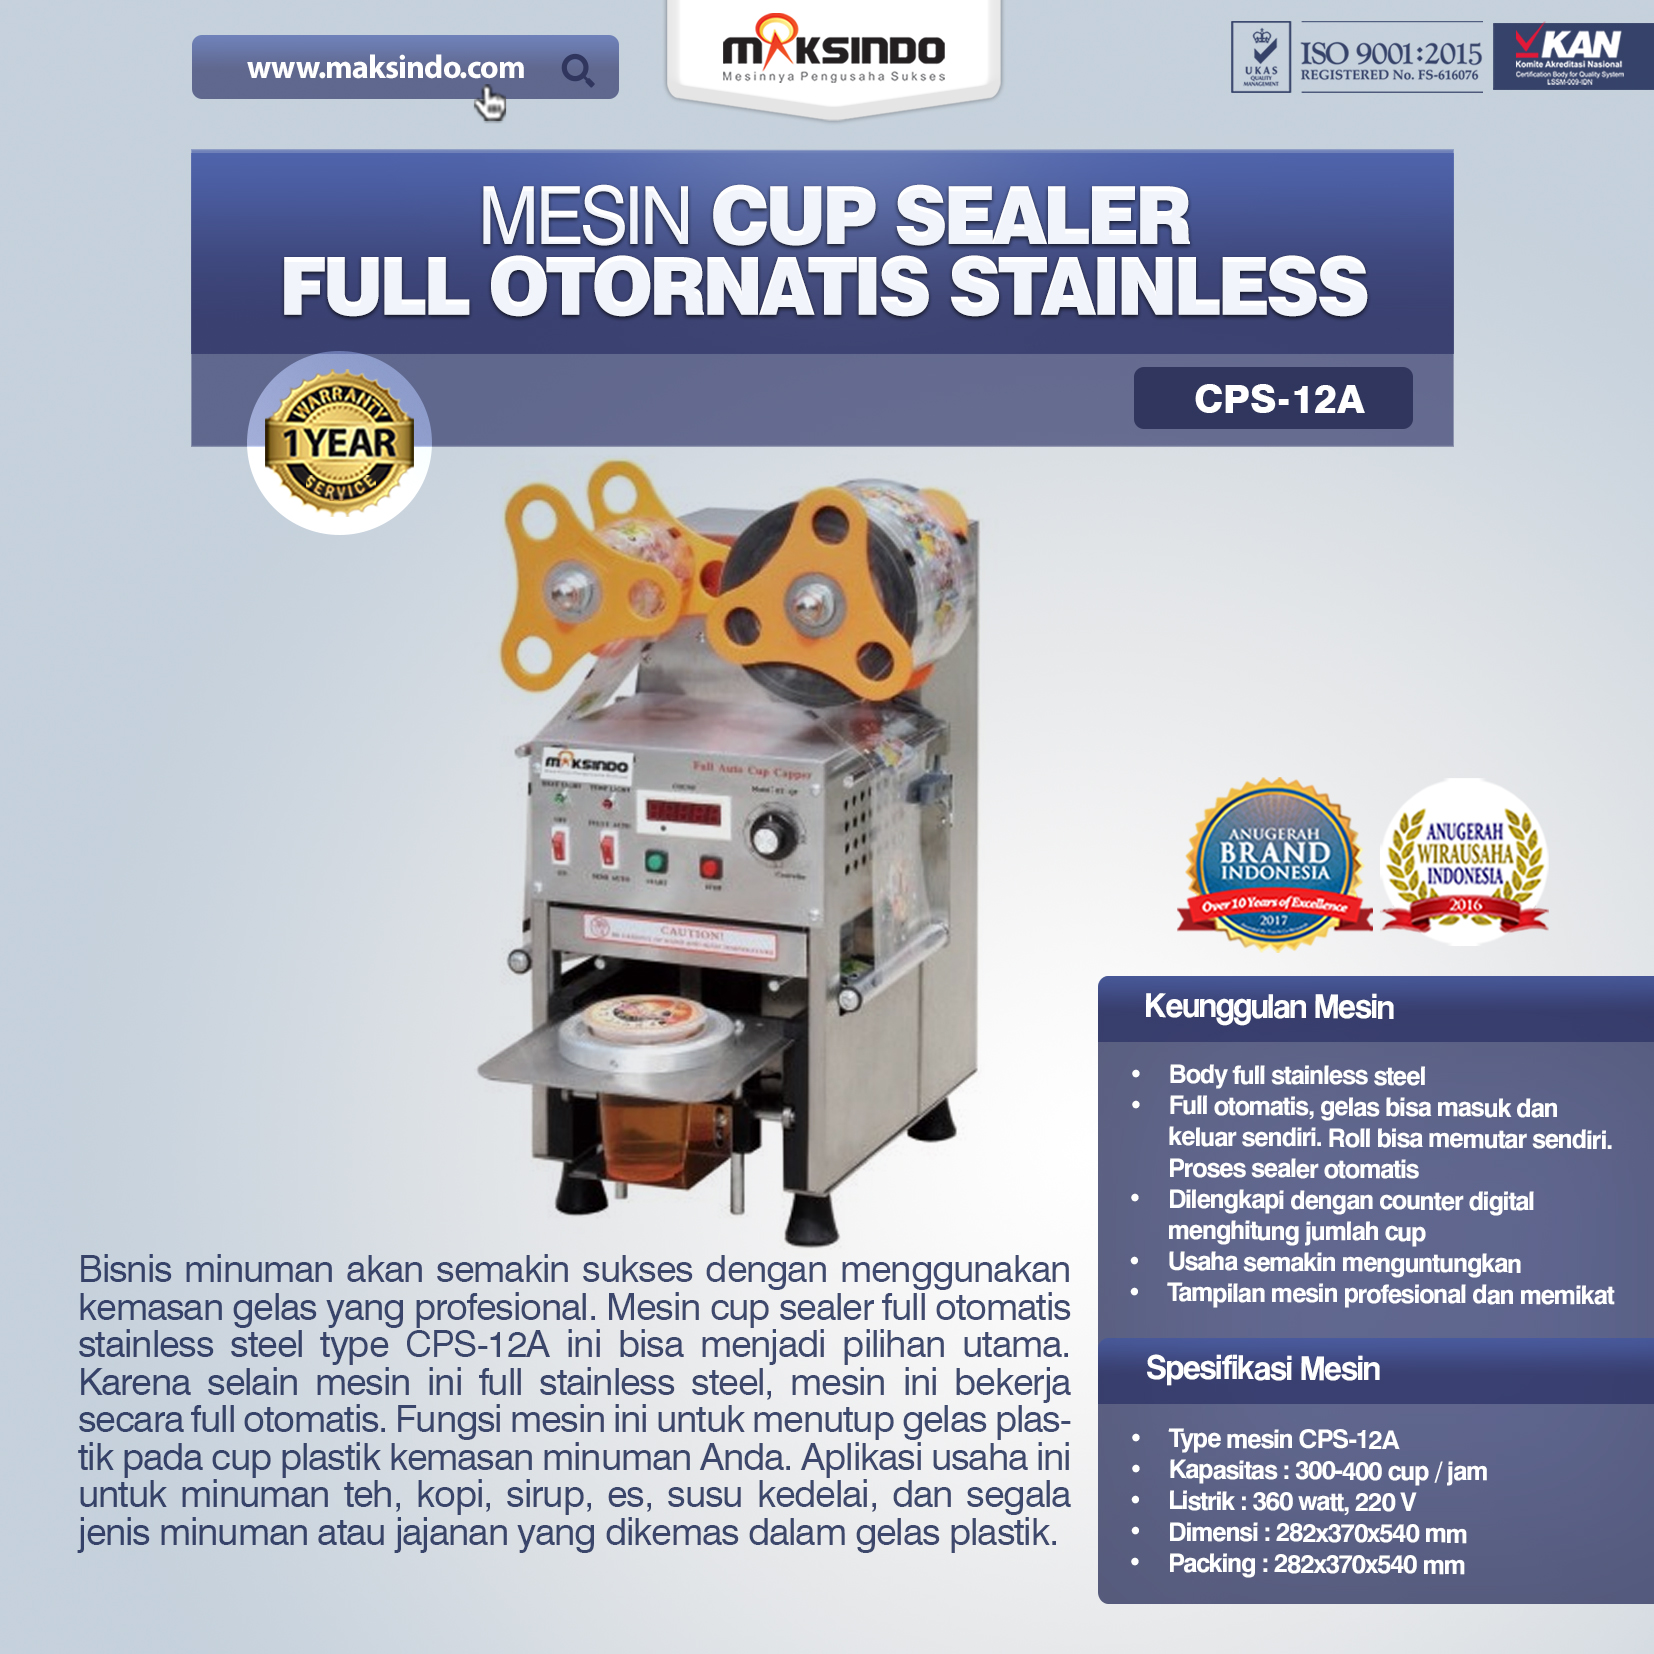 Jual Mesin Cup Sealer Full Otomatis Stainless (CPS-12A) di Bekasi